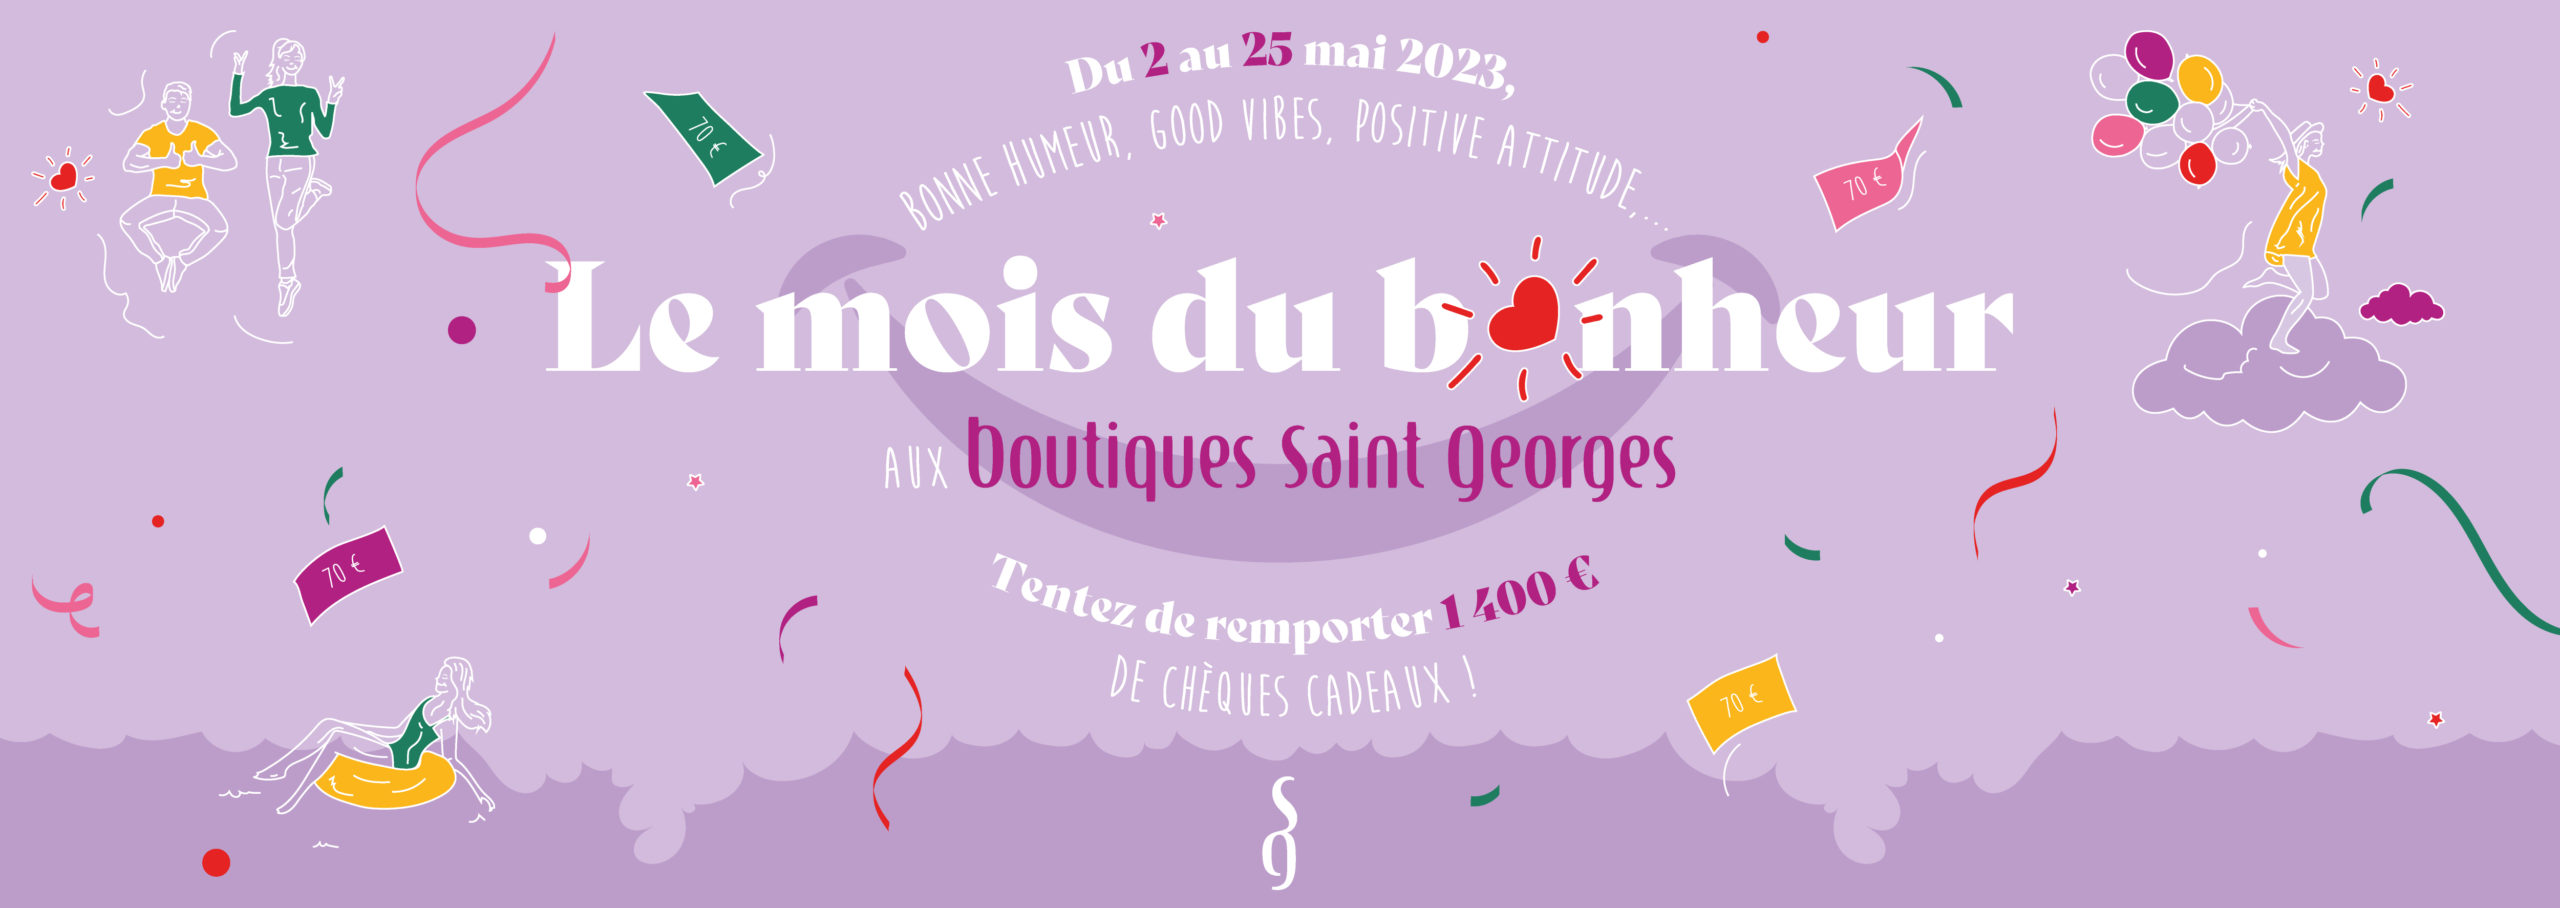 JEU FACEBOOK : C’est le mois du bonheur aux Boutiques Saint Georges ! 🫶🏼